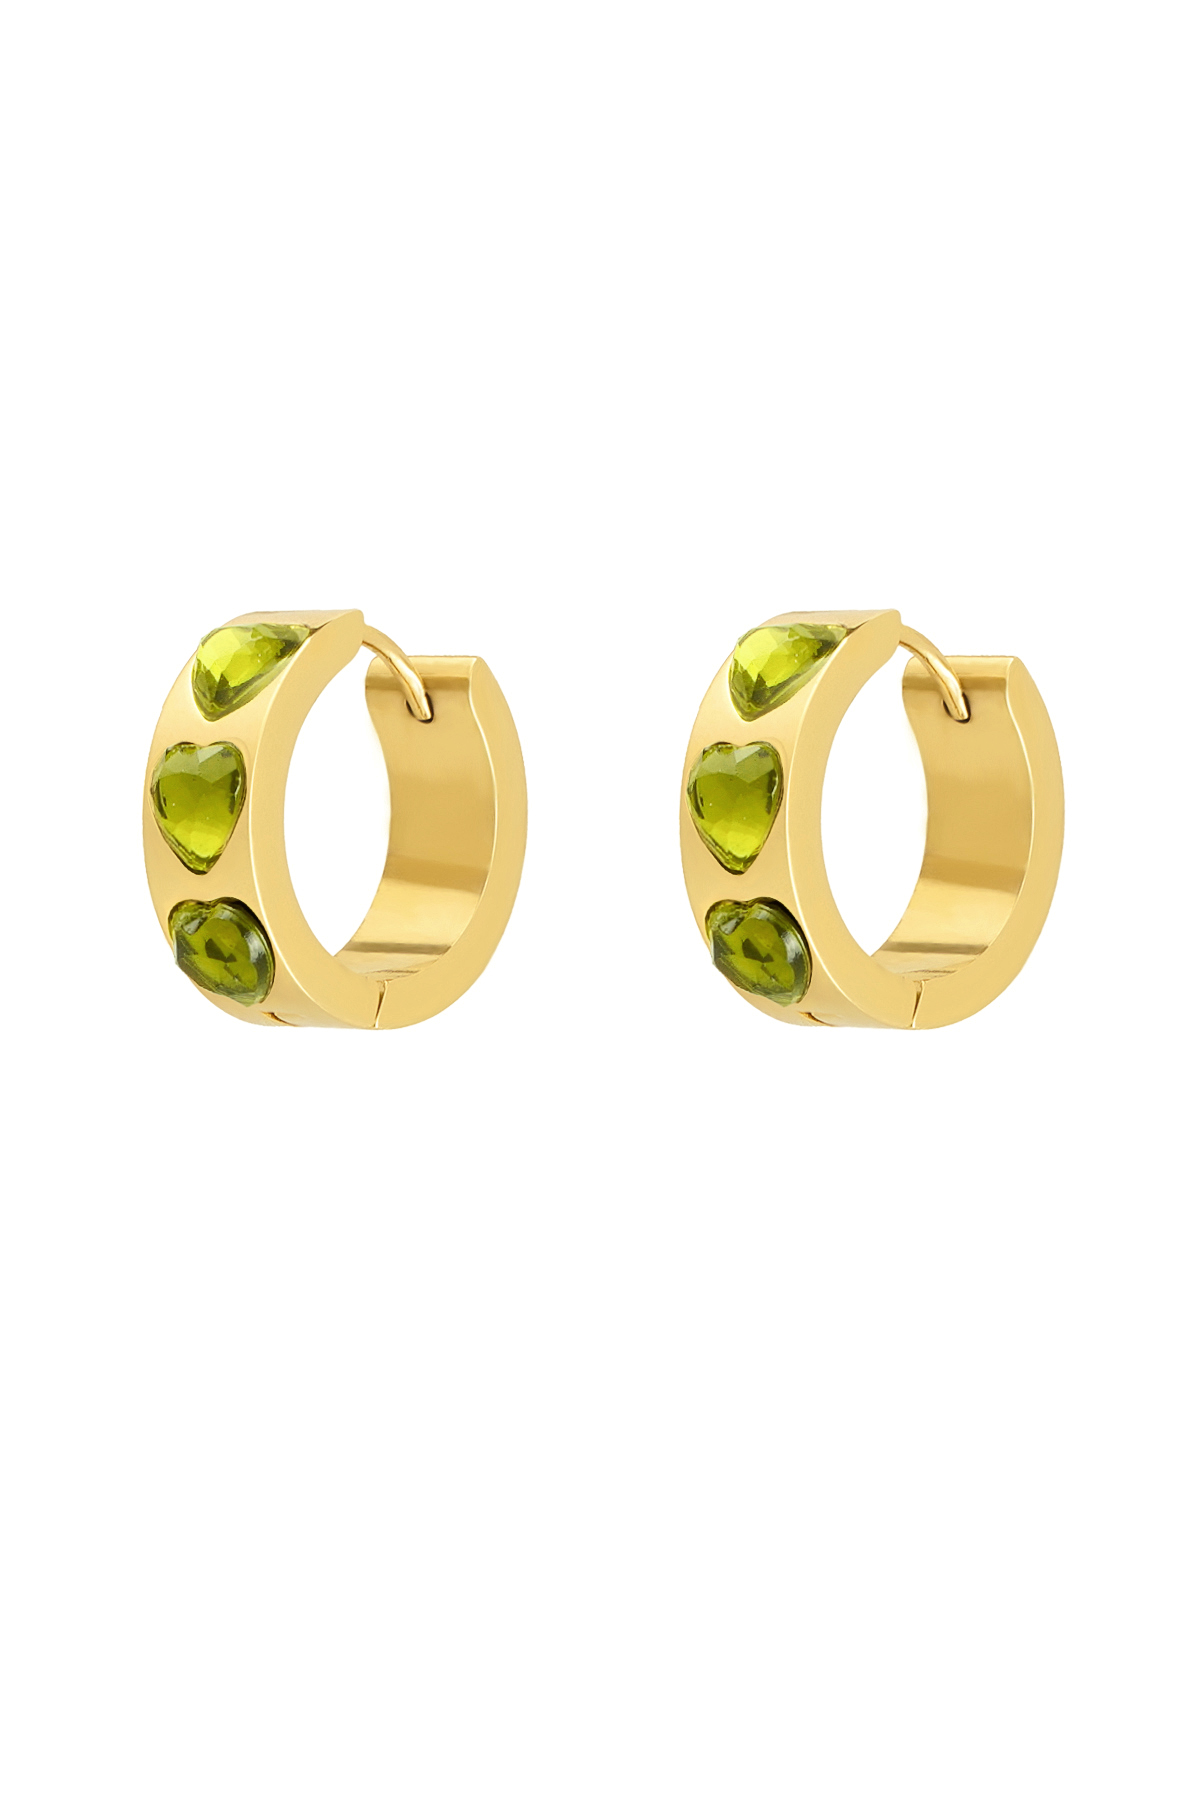 Ohrringe Herzen Steine - Gold/Grün